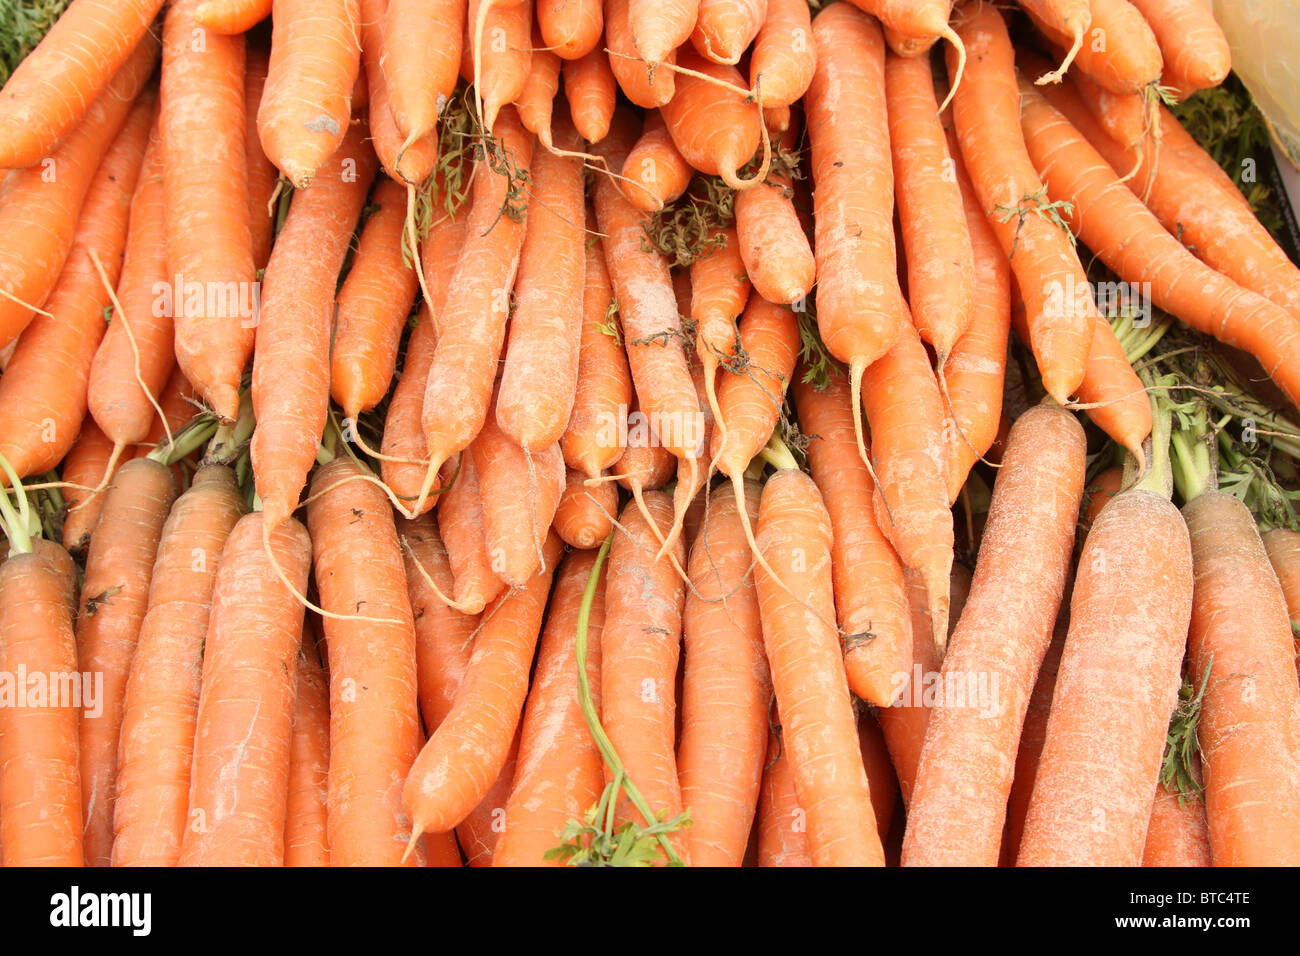 Frisch ausgehobenen und gewaschene Karotten zu verkaufen Stockfoto